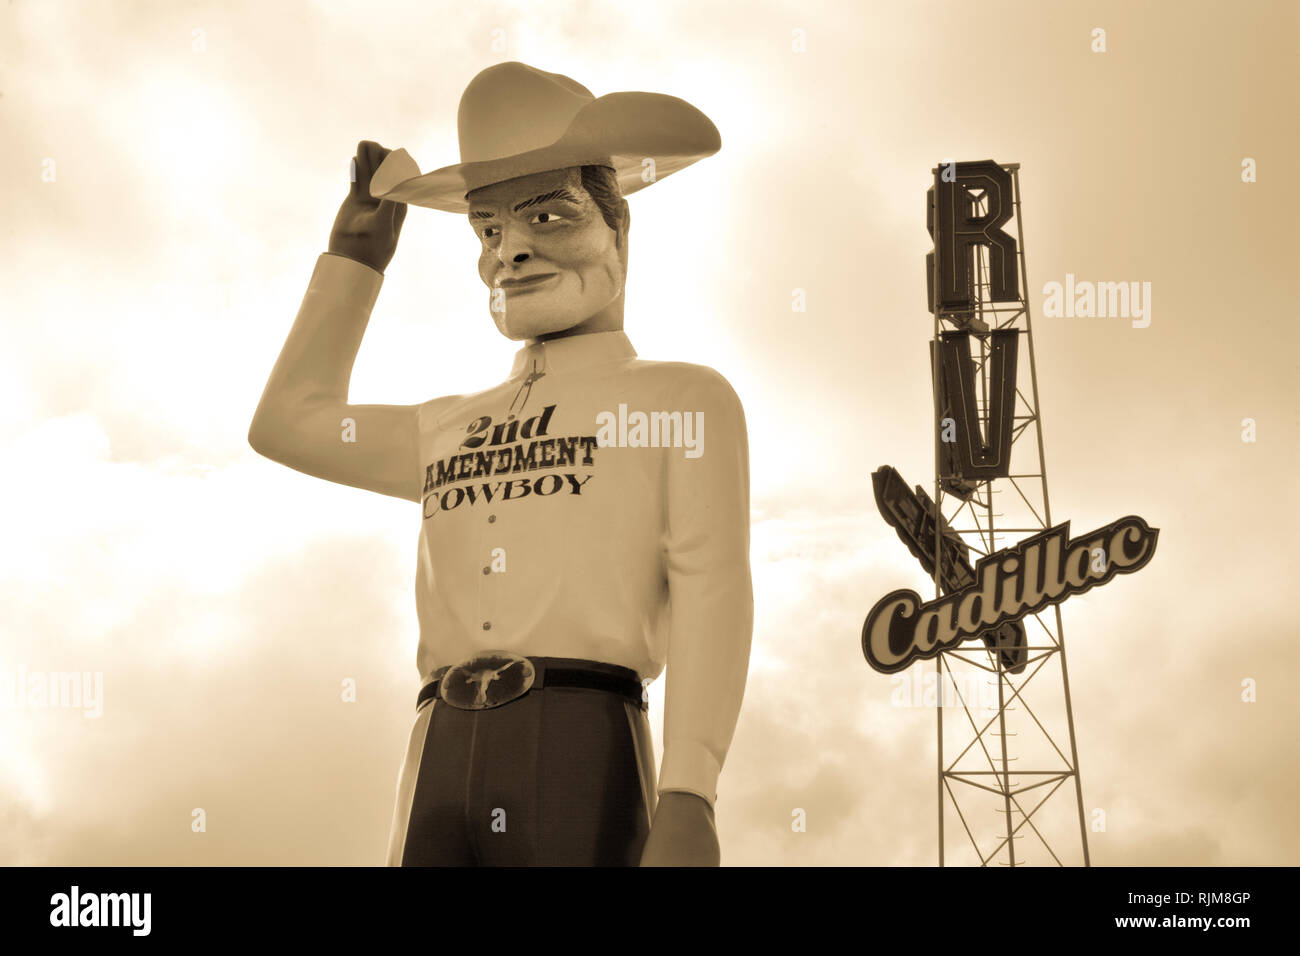 Am Straßenrand Attraktion eines riesigen Cowboyhut tragen Statue von Cowboy mit Shirt lesen" 2. Änderungsantrag Cowboy' in der Nähe von Amarillo, TX, USA Stockfoto